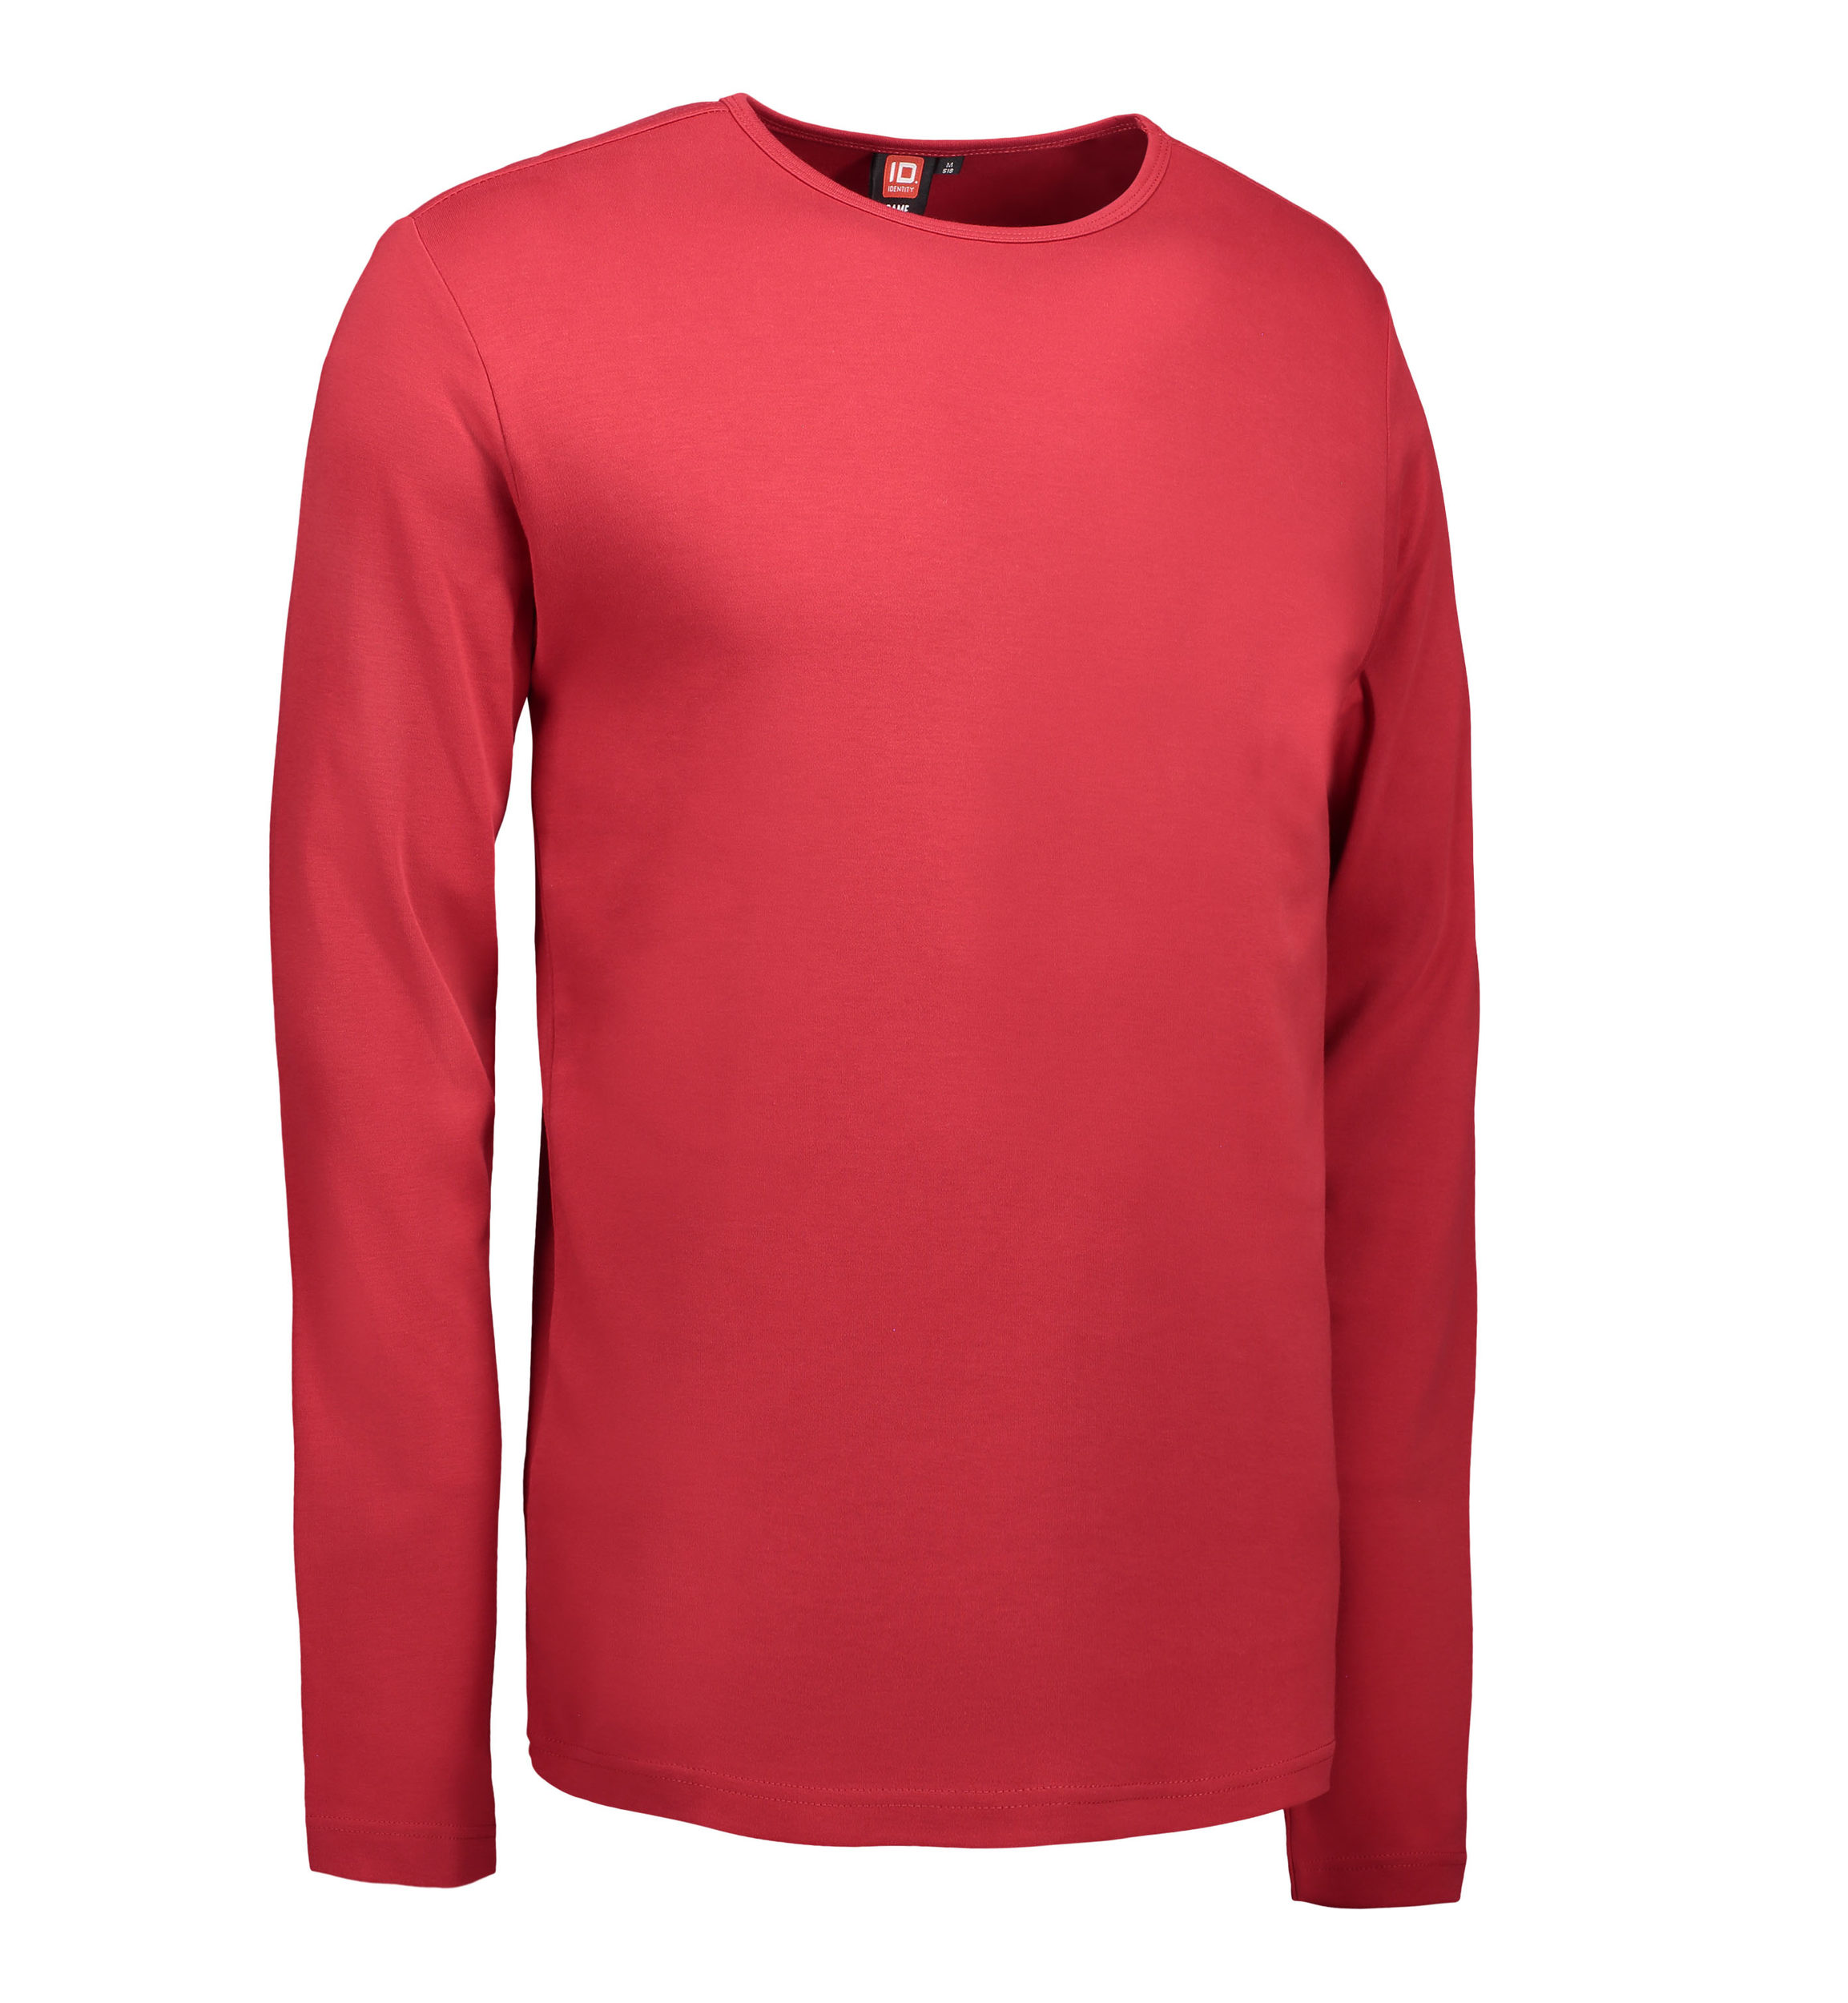 Billede af Rød langærmet t-shirt til mænd - M hos Sygeplejebutikken.dk